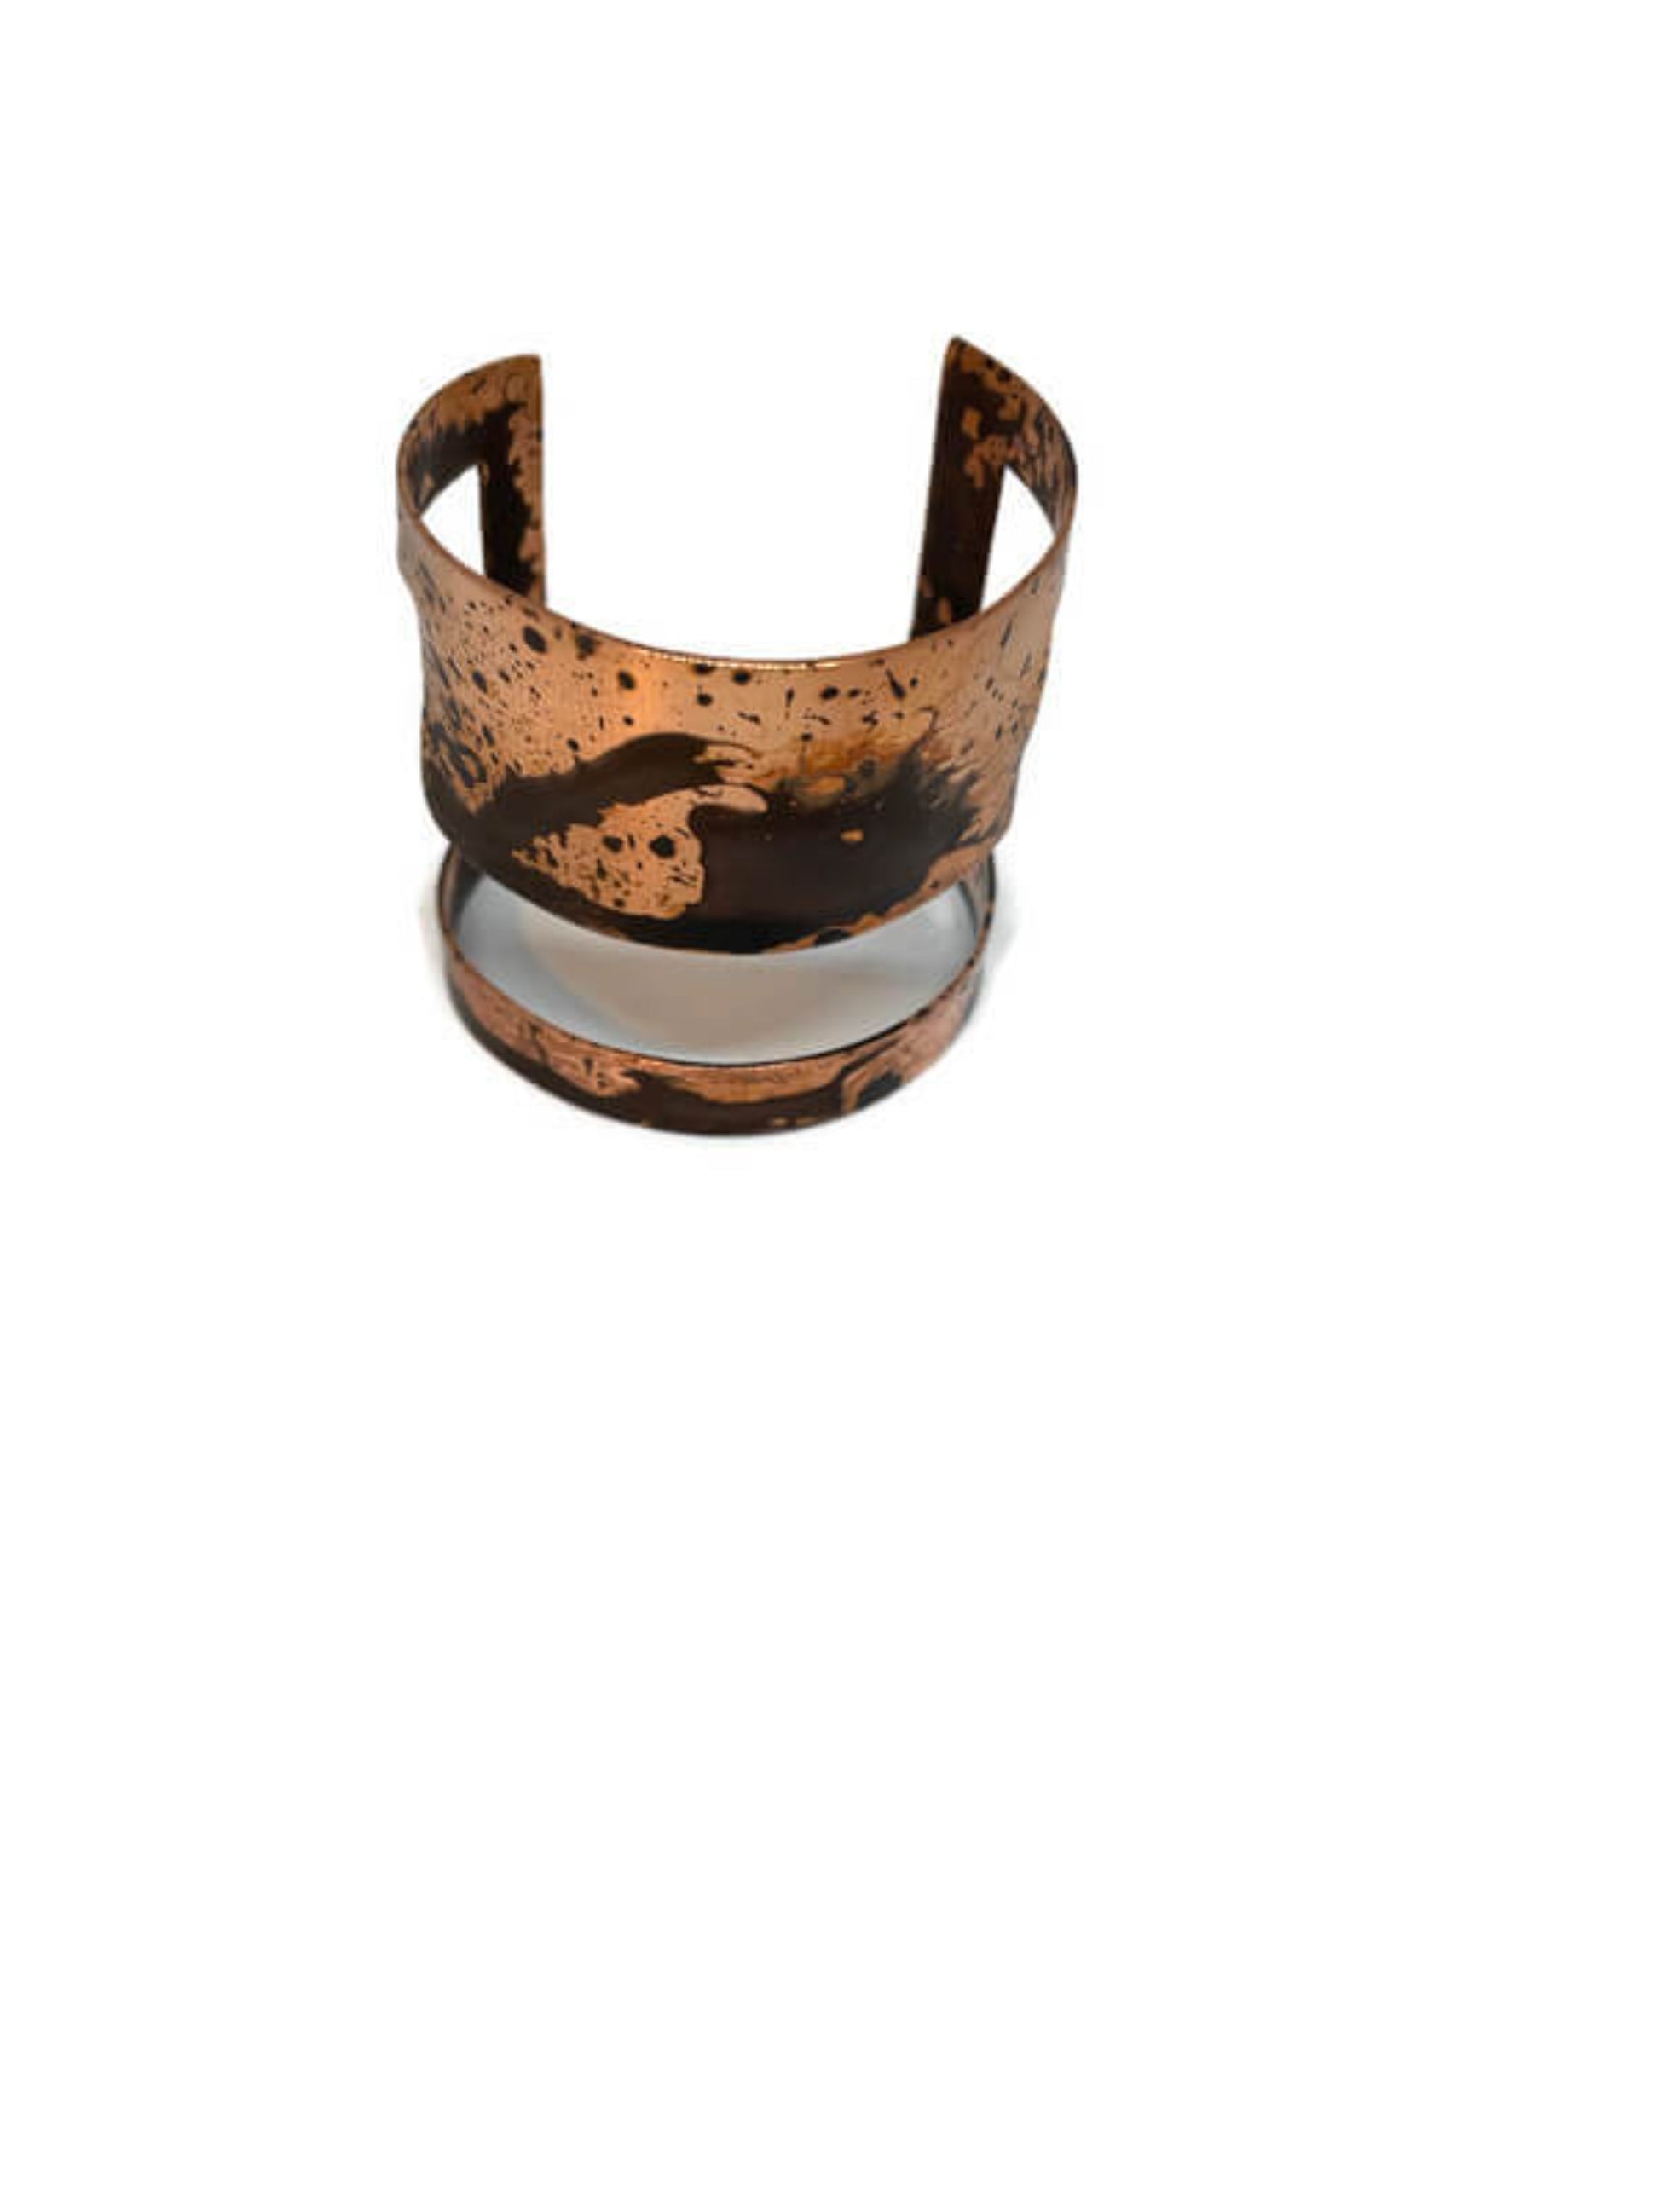 Oxidised copper cuff bracelet  Rose - Black Internal Ideas Bracelet - CURIUDO